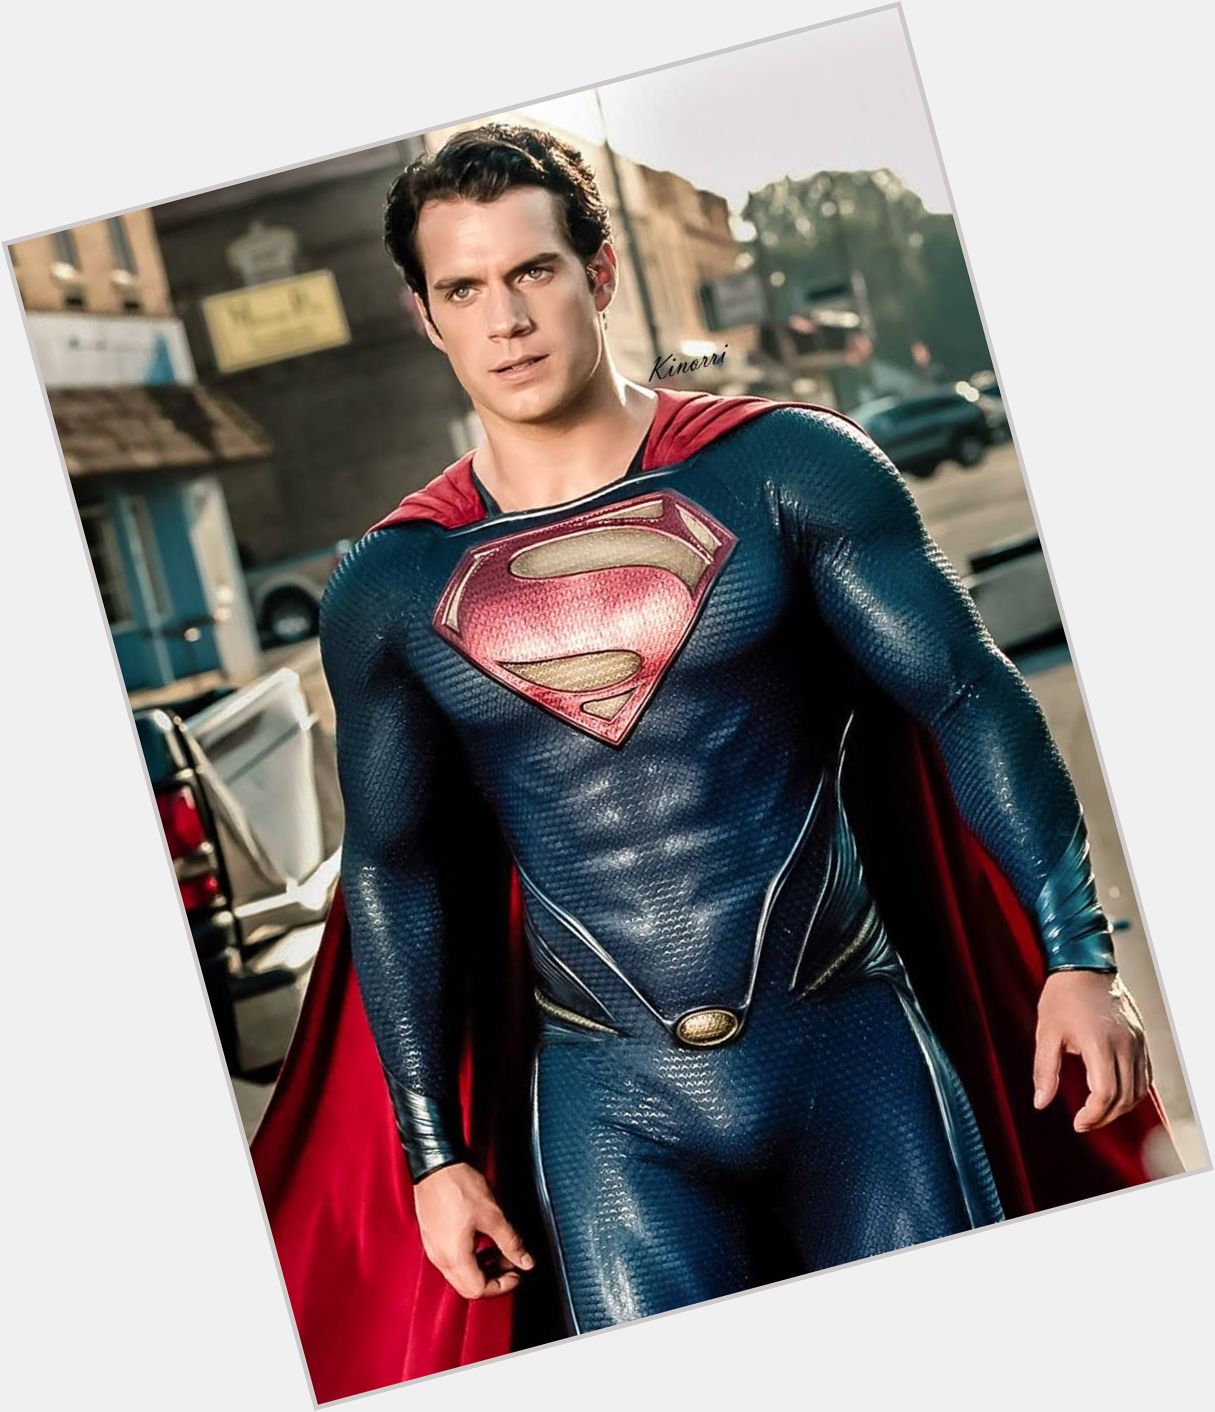 Happy Birthday to The Superman, Henry Cavill!  